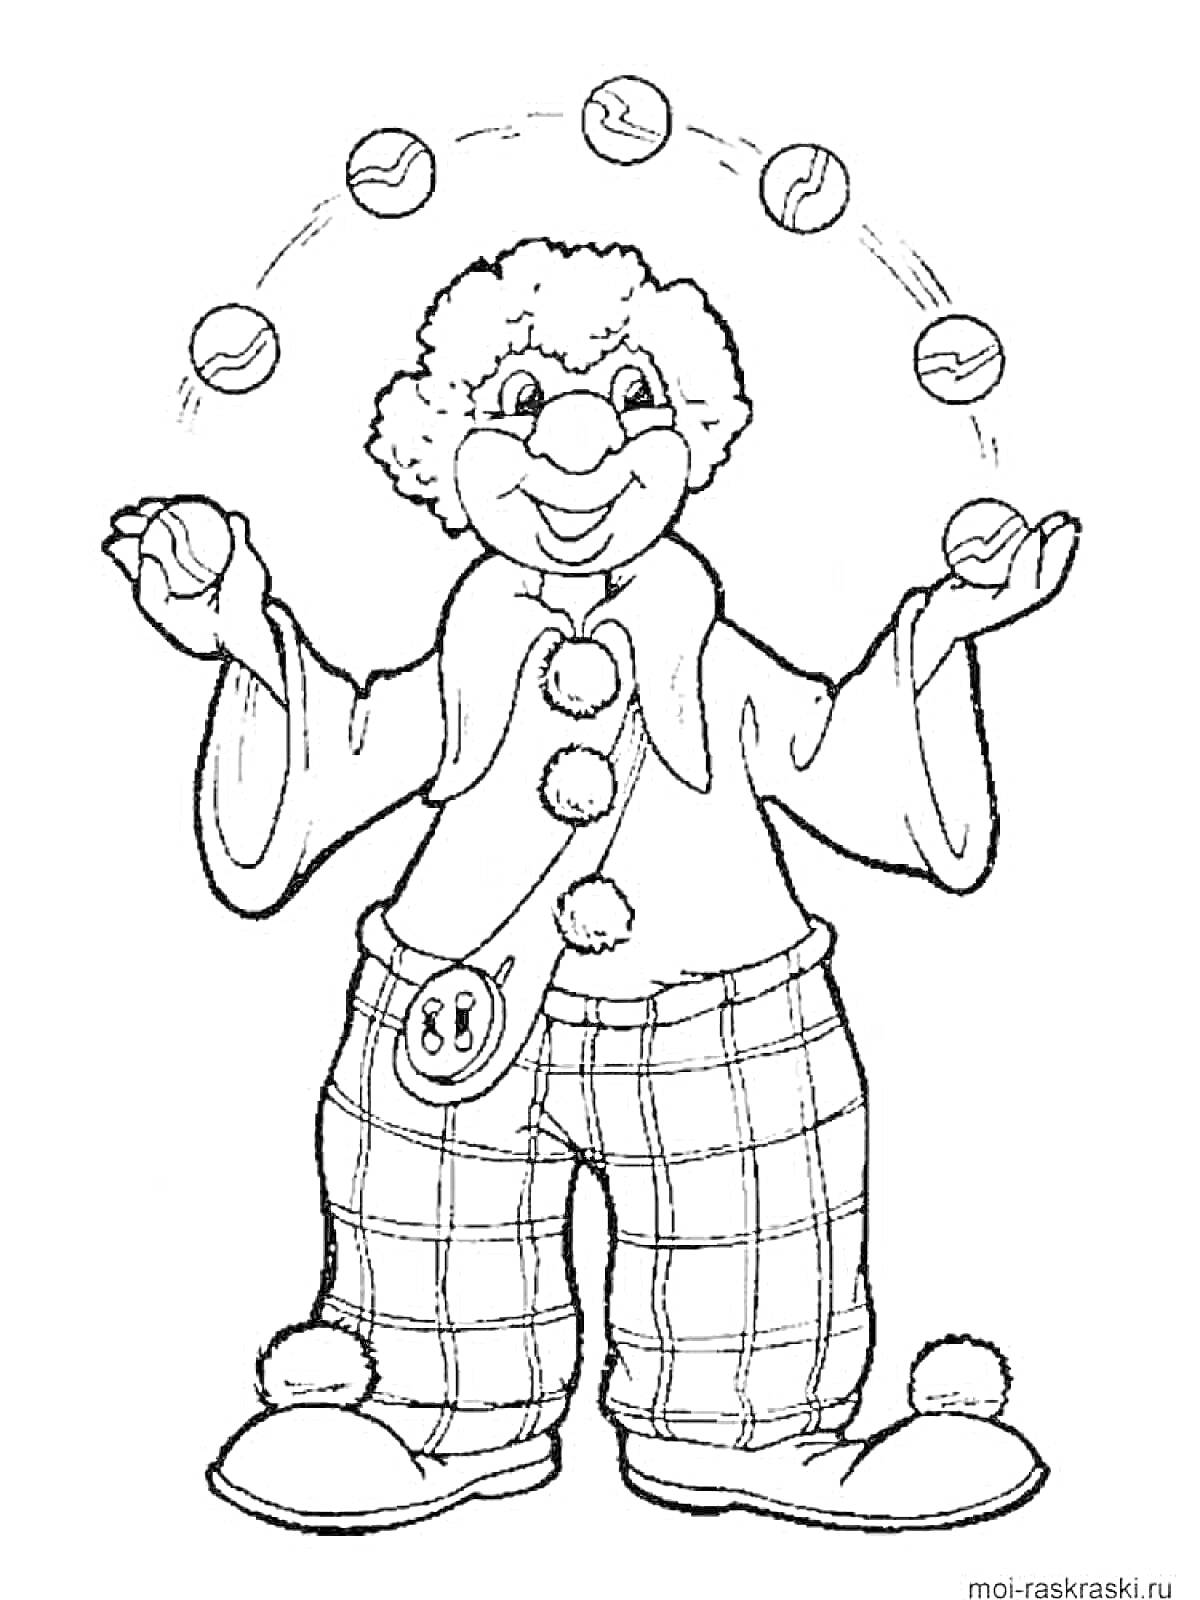 Раскраска Клоун-жонглер с мячами в штанах в клетку и клоунскими туфлями